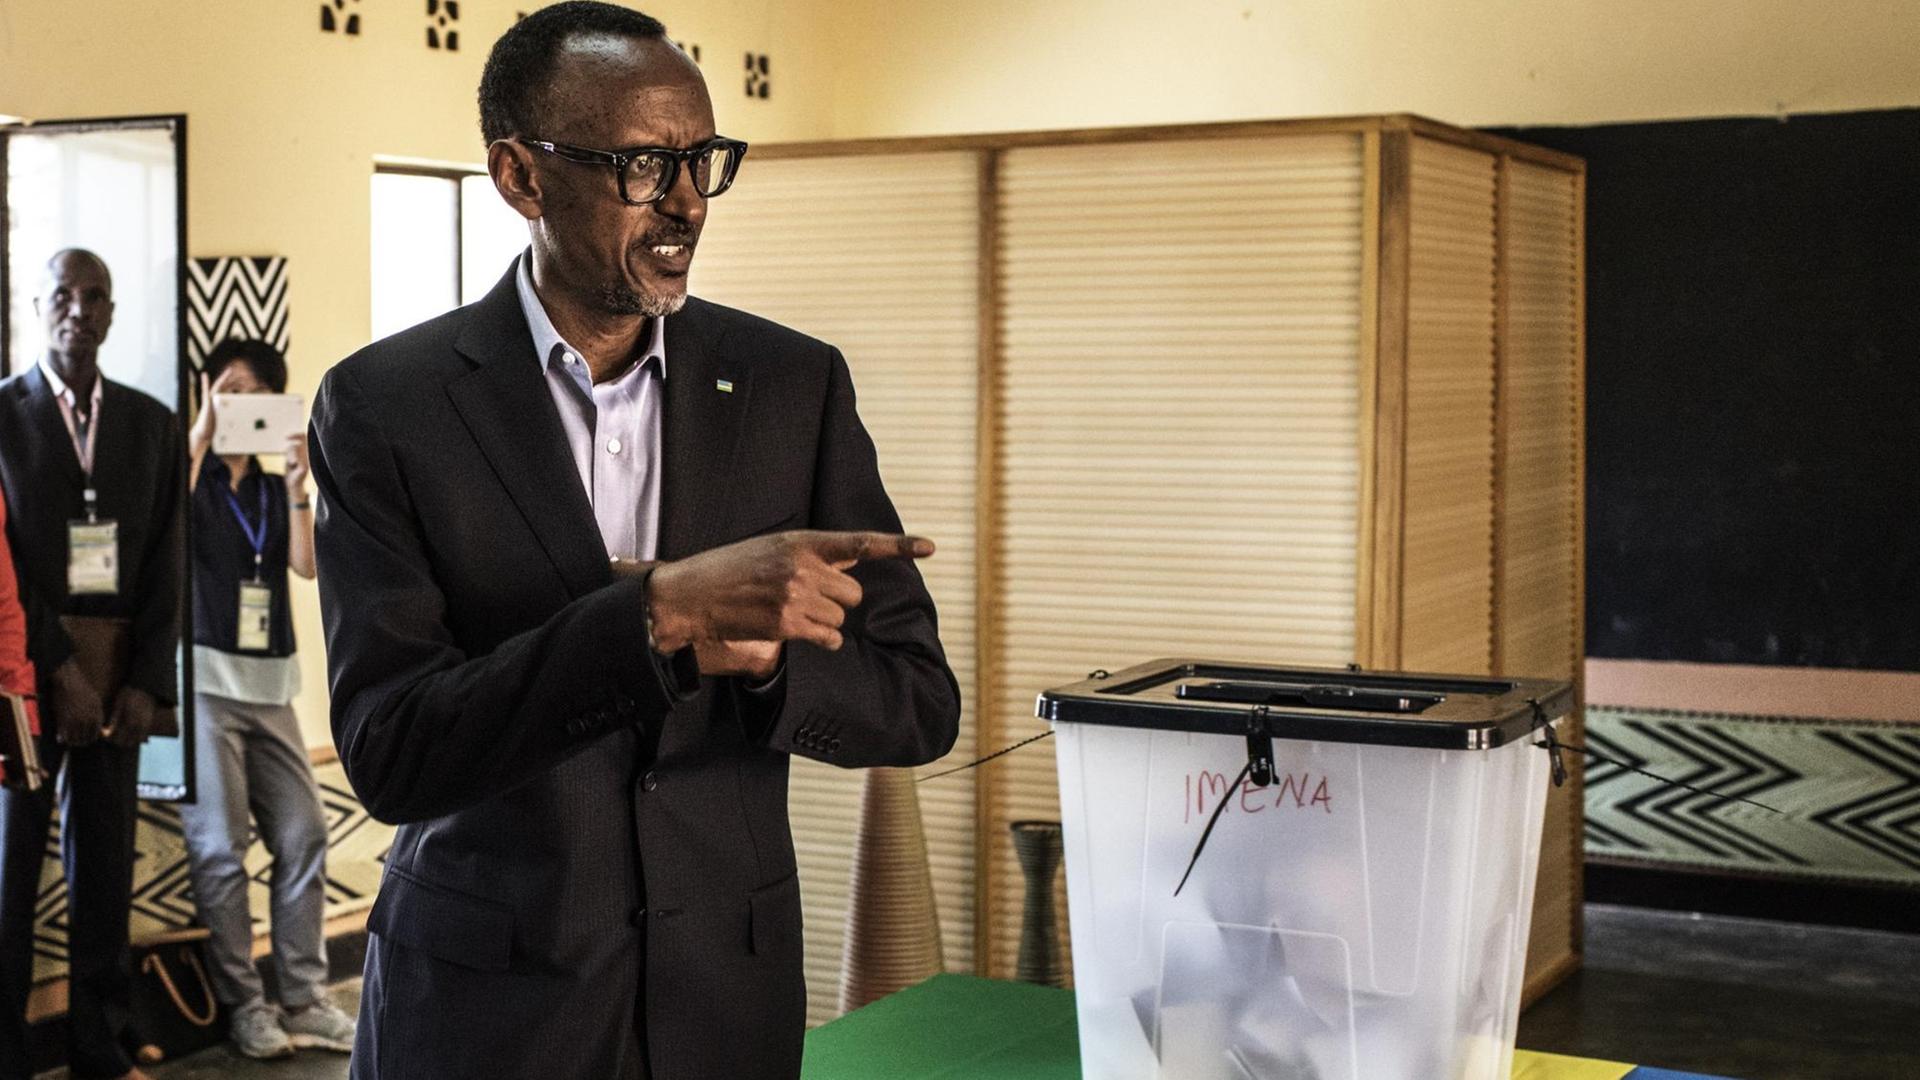 Ruandas Präsident Paul Kagame in dunklem Anzug bei der Stimmabgabe in einem Wahllokal in Kigali.